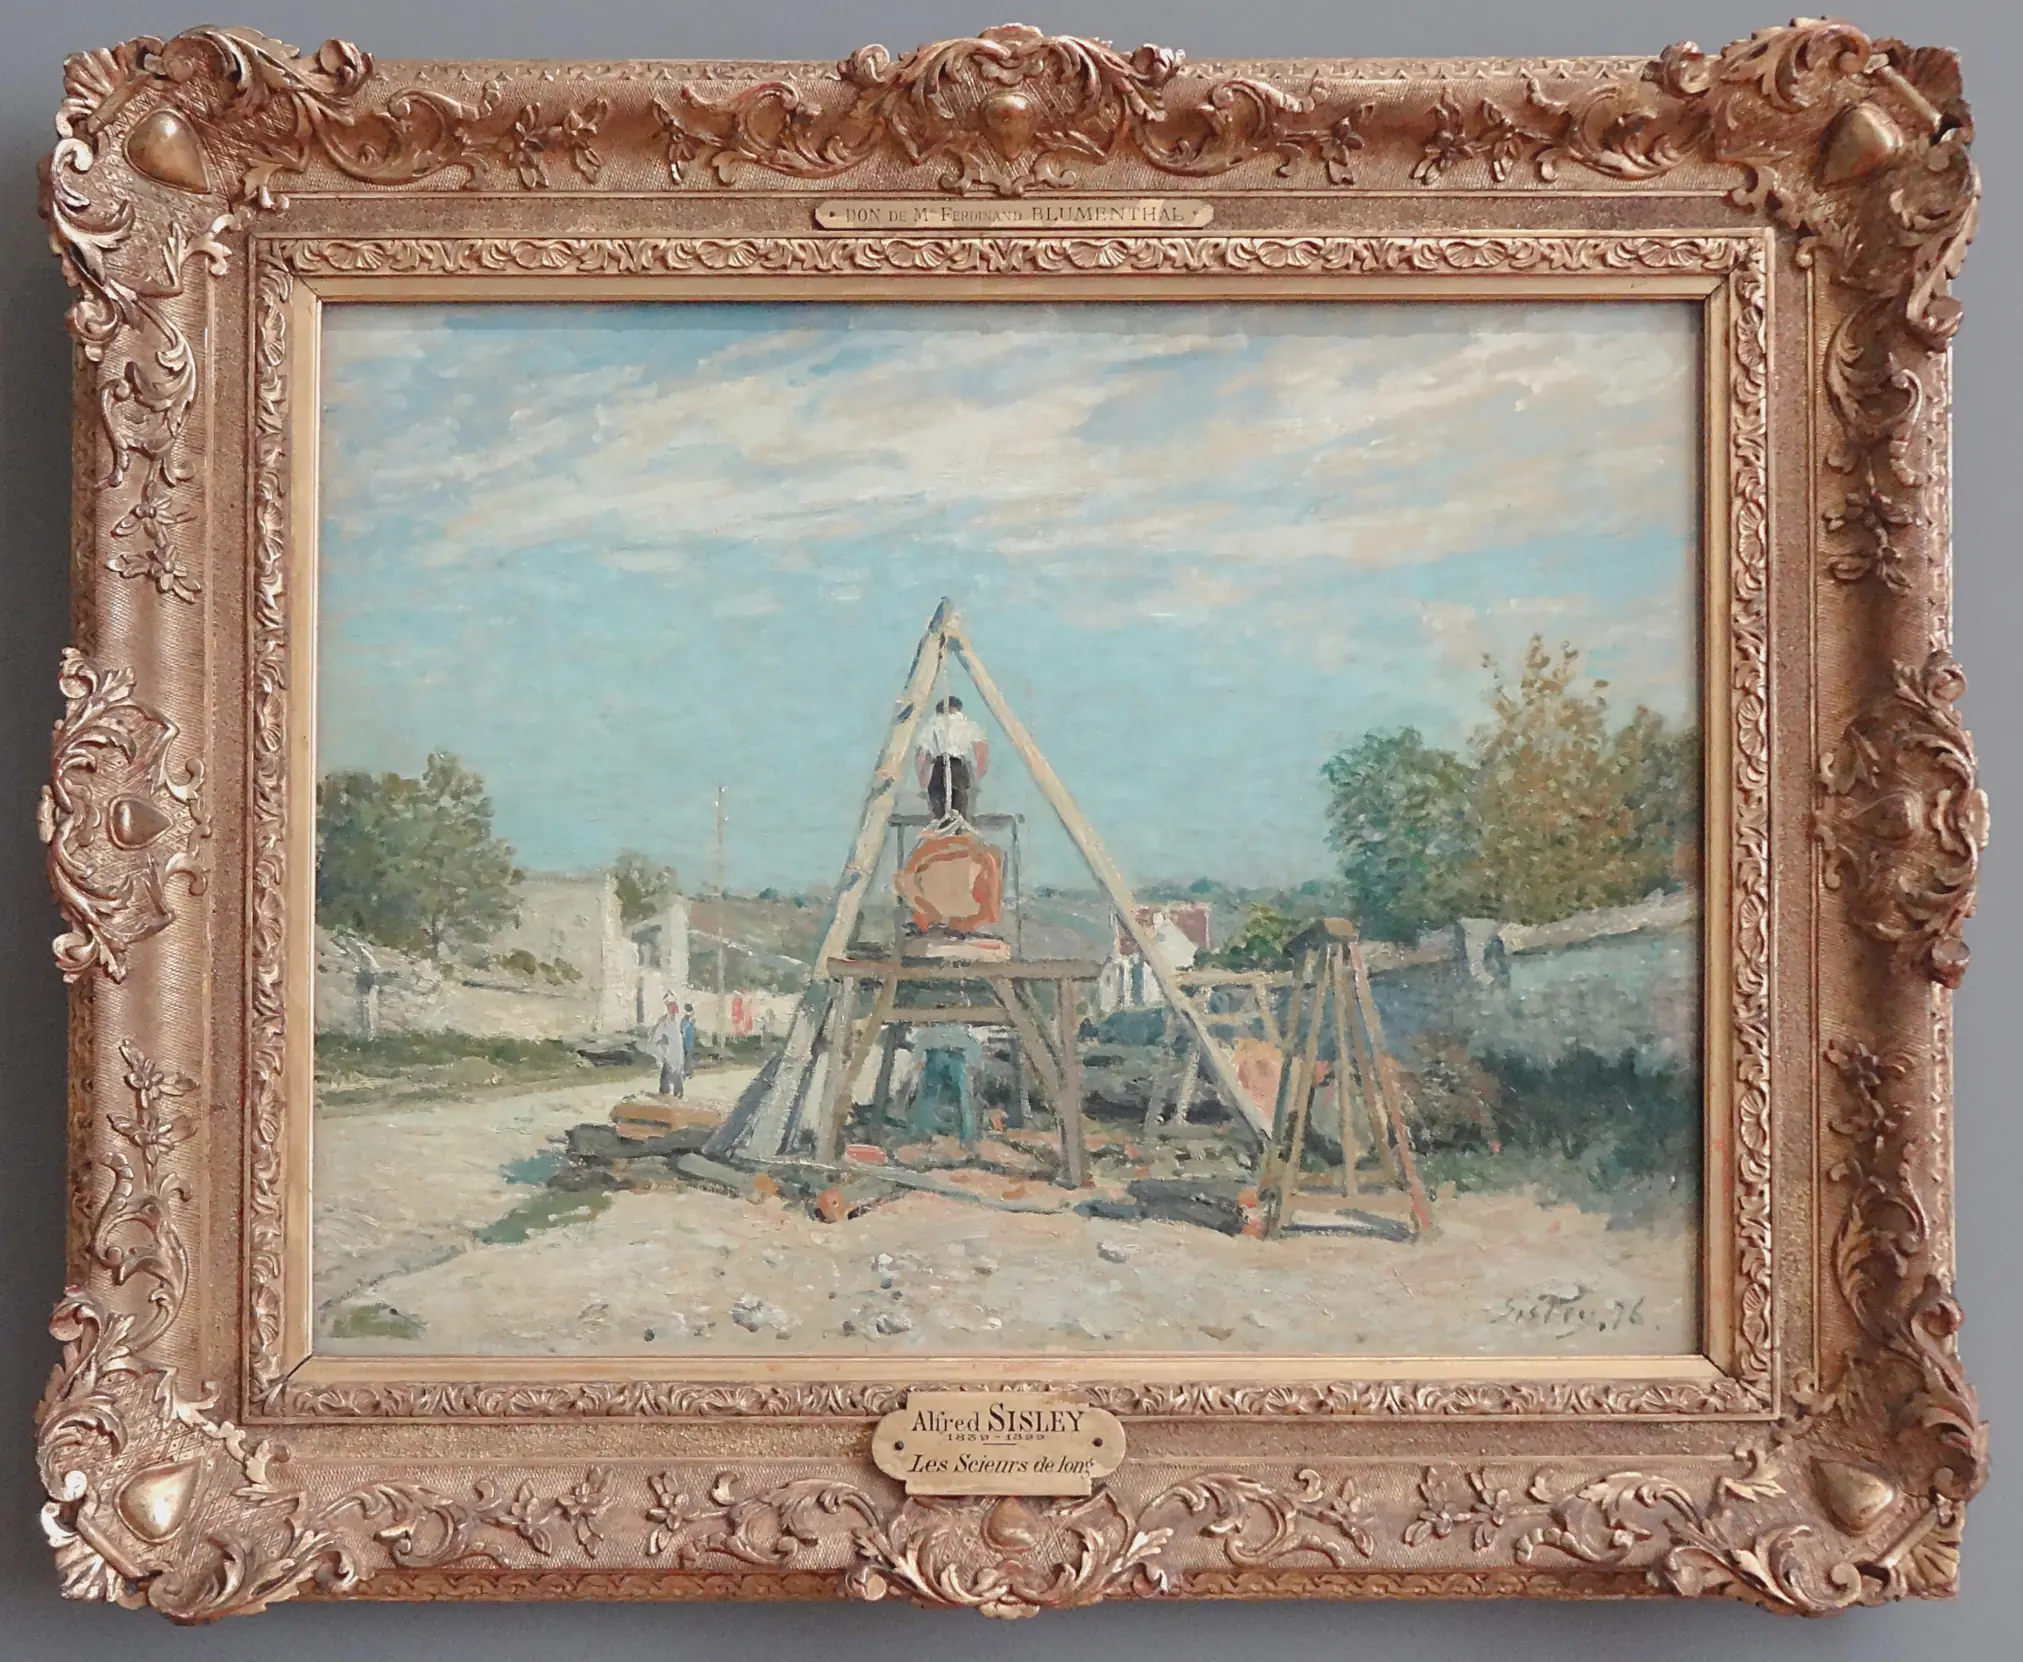 « Les scieurs de long », Alfred Sisley, 1876, col. Petit Palais, musée des Beaux-arts de la Ville de Paris, France.